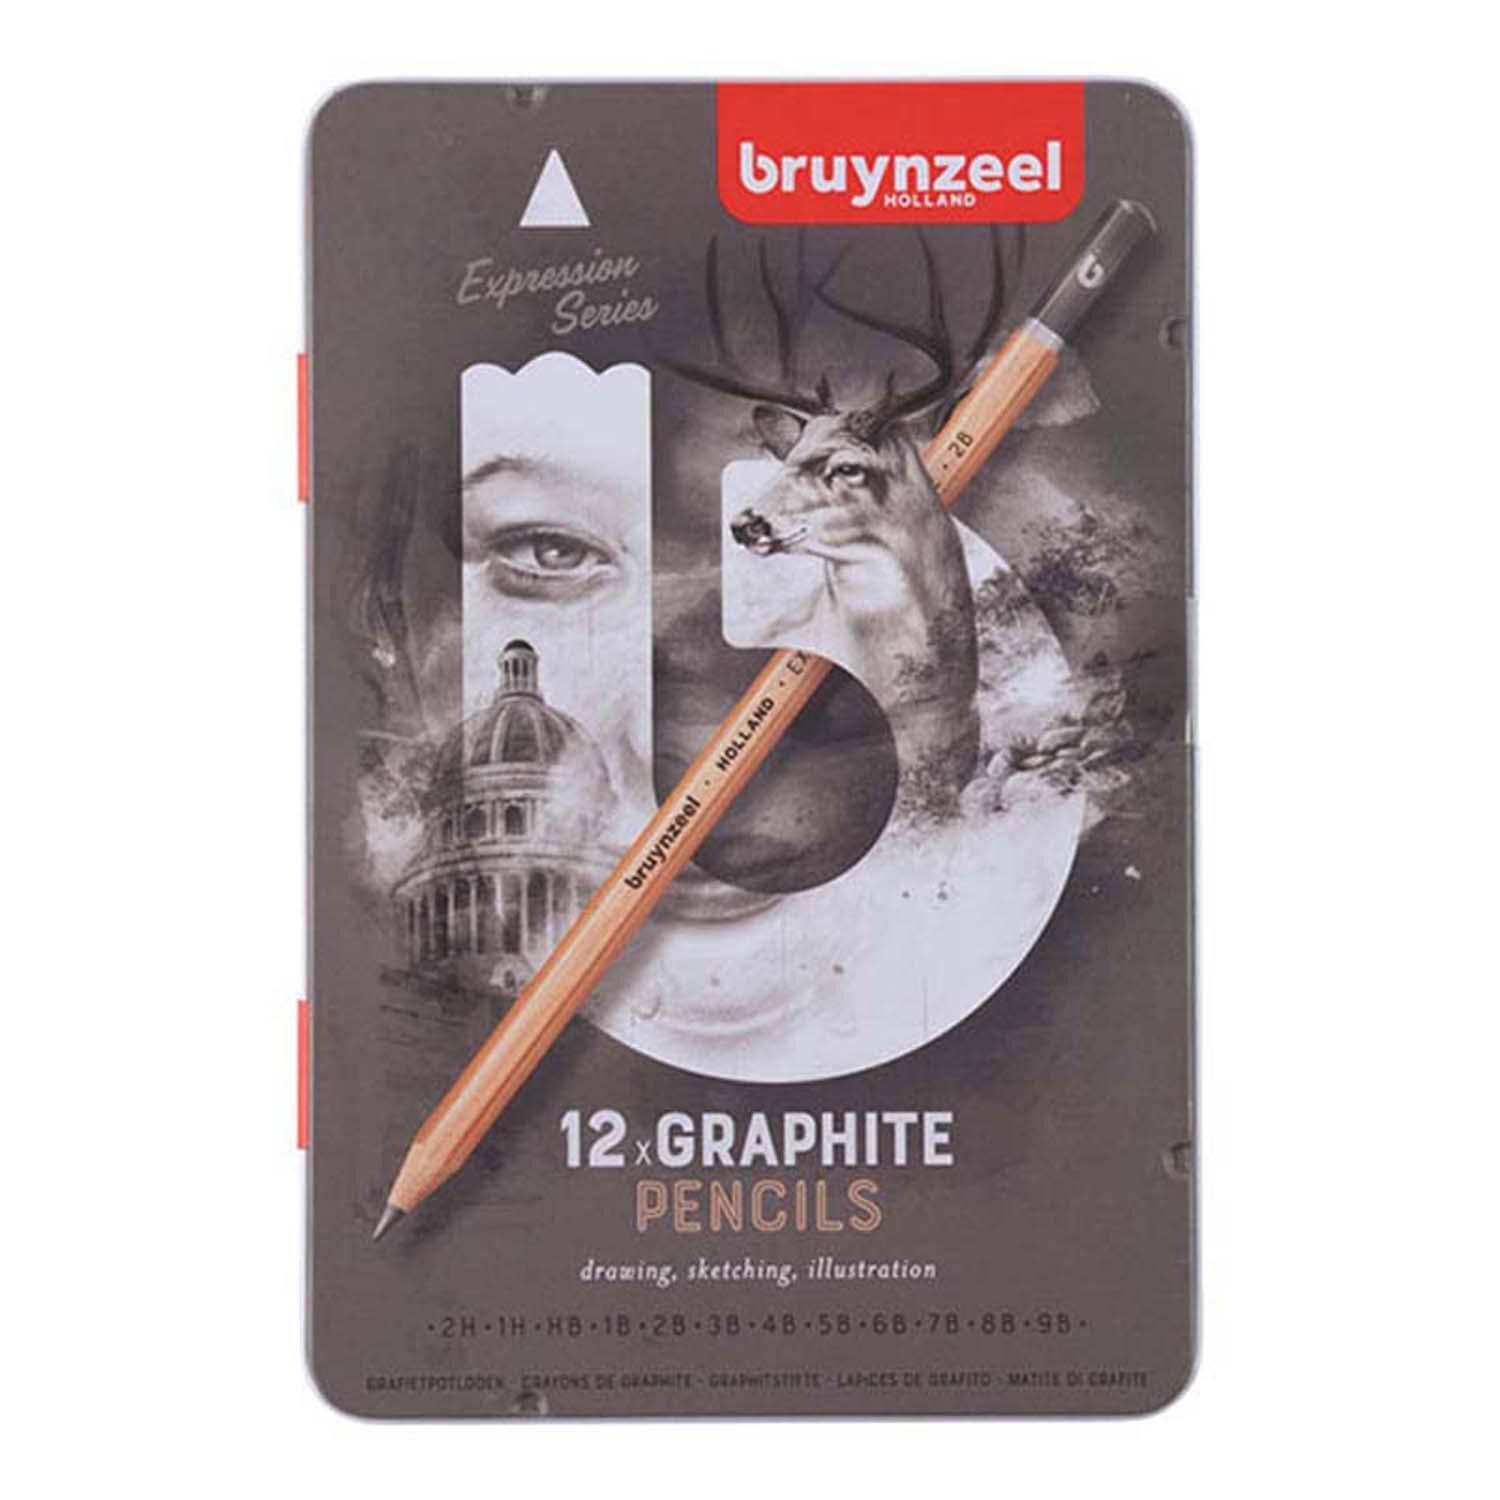 Bruynzeel Expresson Grafite Set 12Lı 60311012